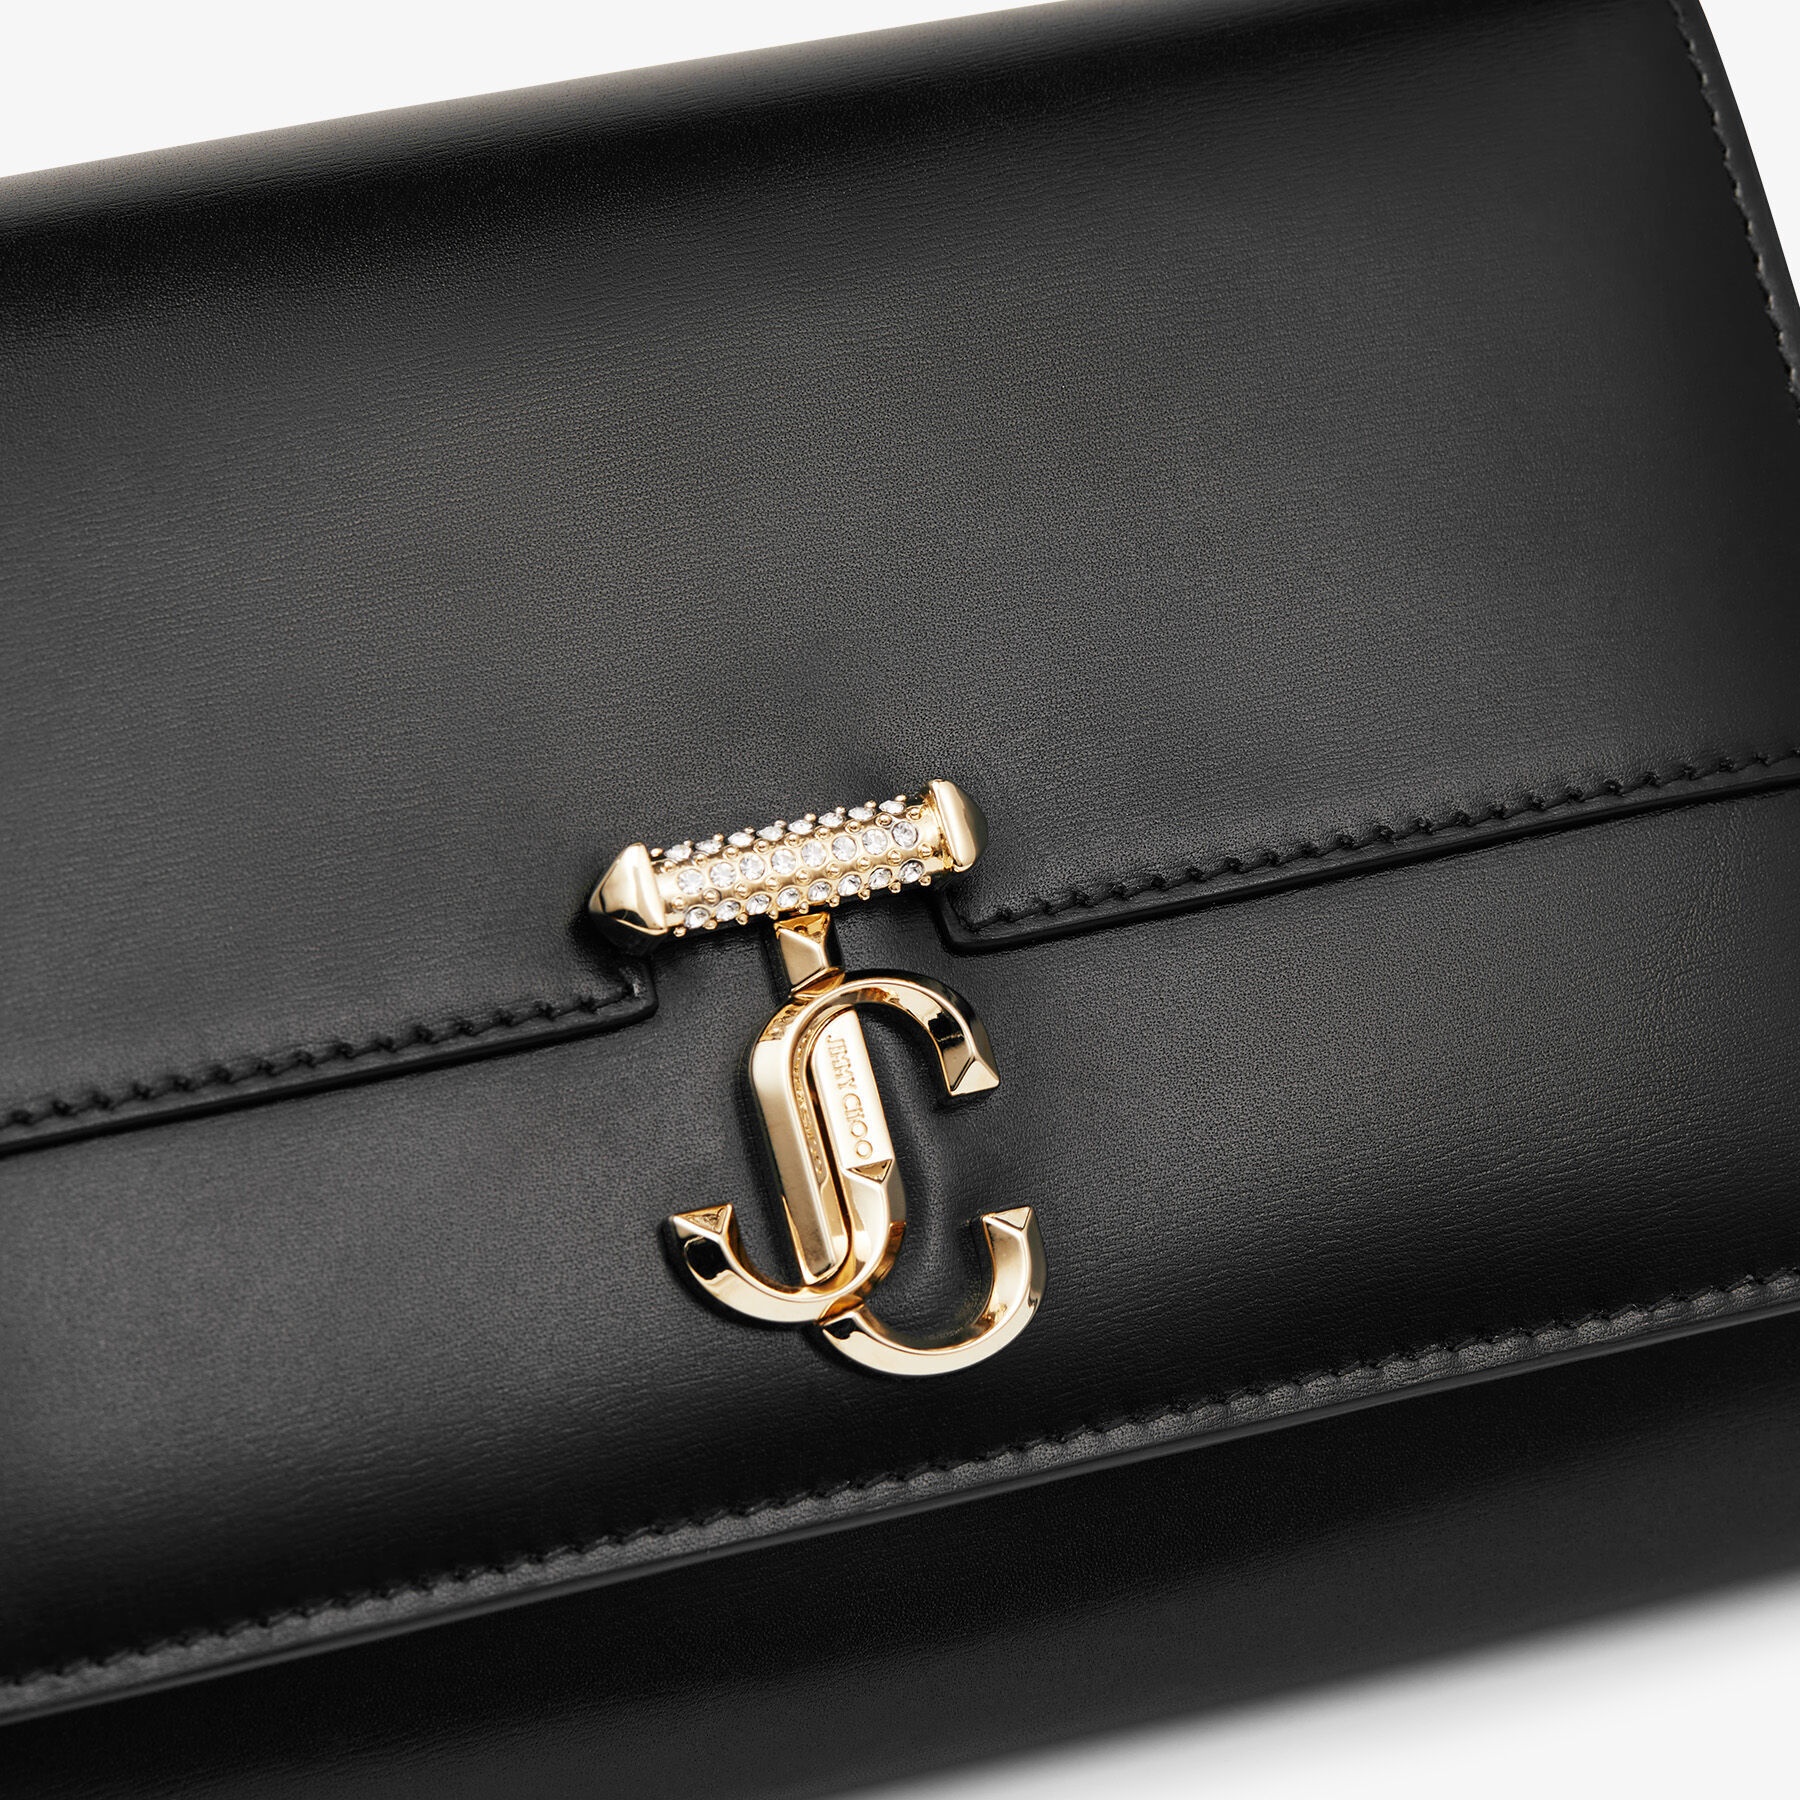 Varenne Clutch, Black Leather Clutch Bag with Crystal Bar and Gold JC Emblem